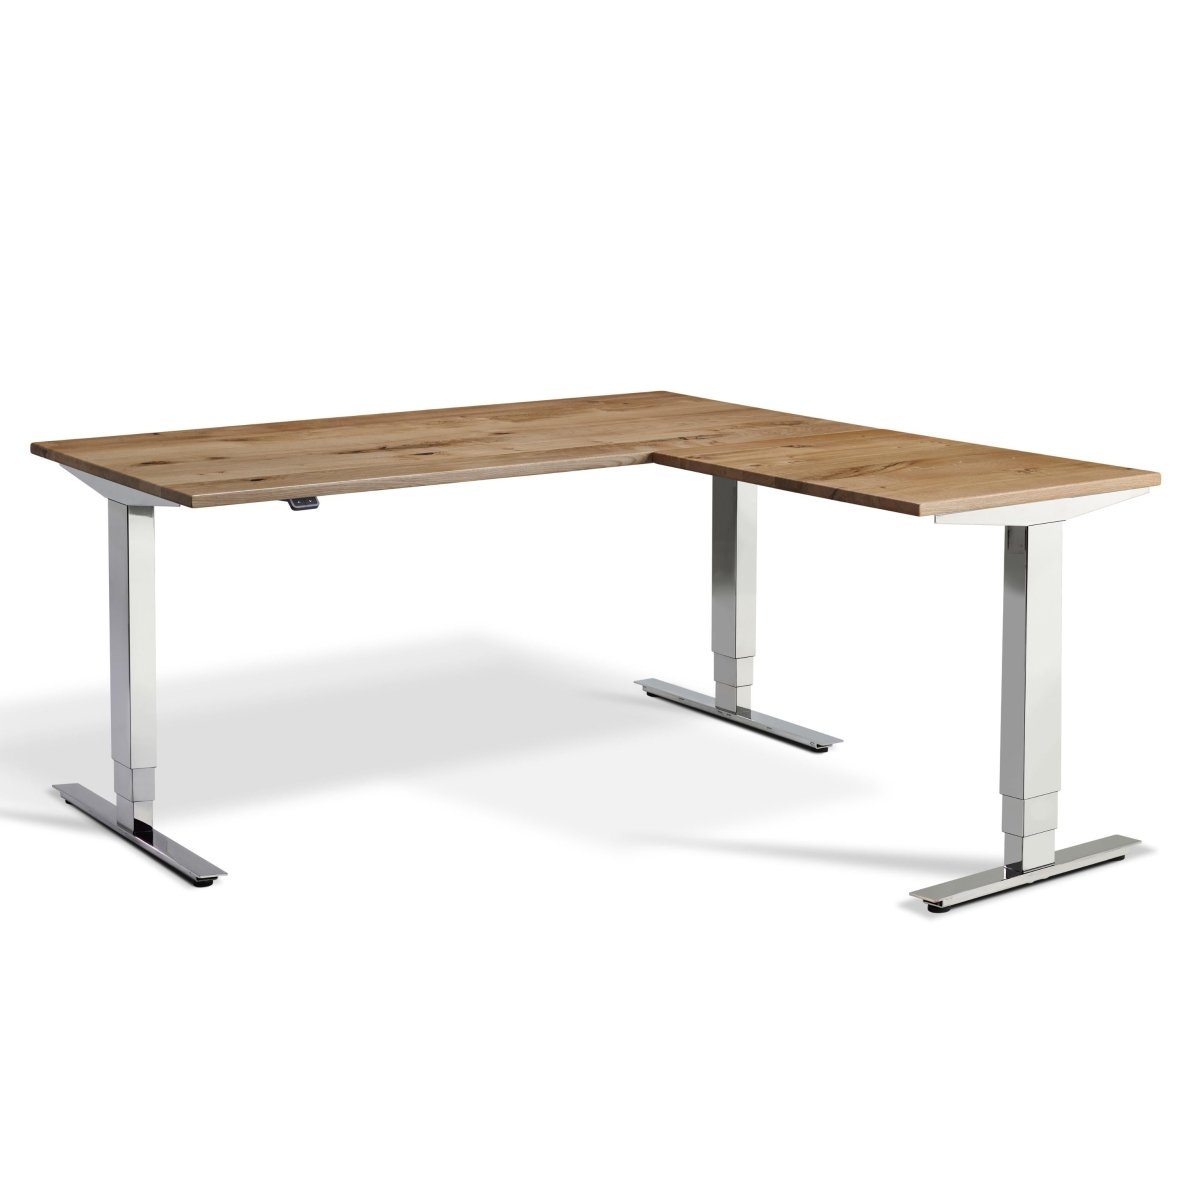 Oak Standing Desk - Corner Height Adjustable Sit Stand Desk - The Kroma